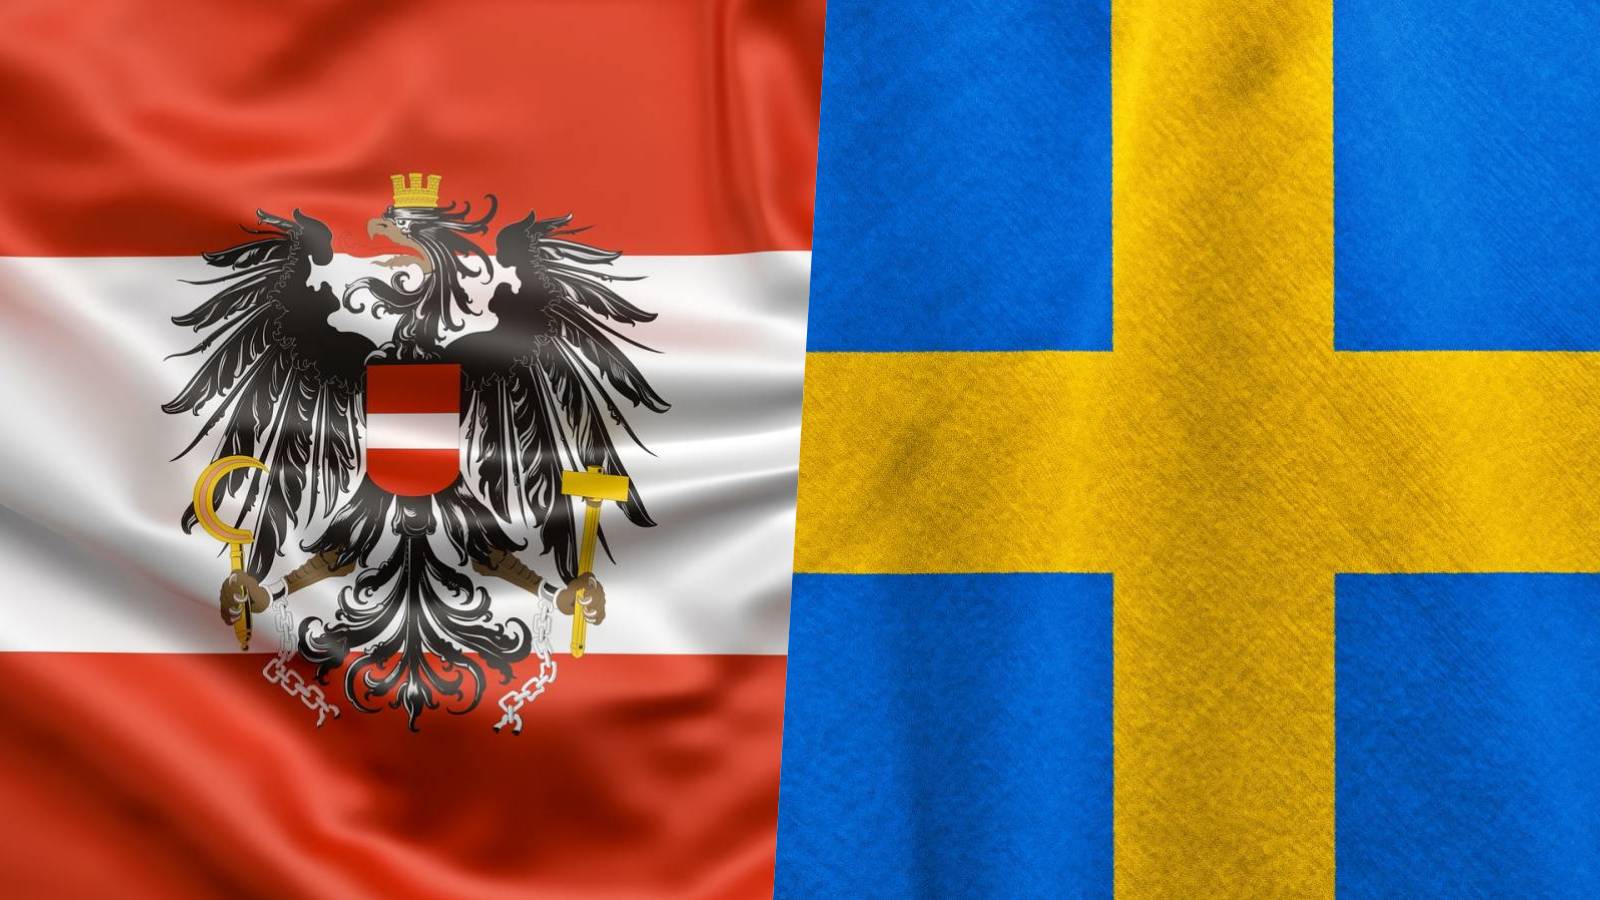 Østrig hjalp Sverige med store foranstaltninger til fordel for Rumæniens Schengen-tiltrædelse